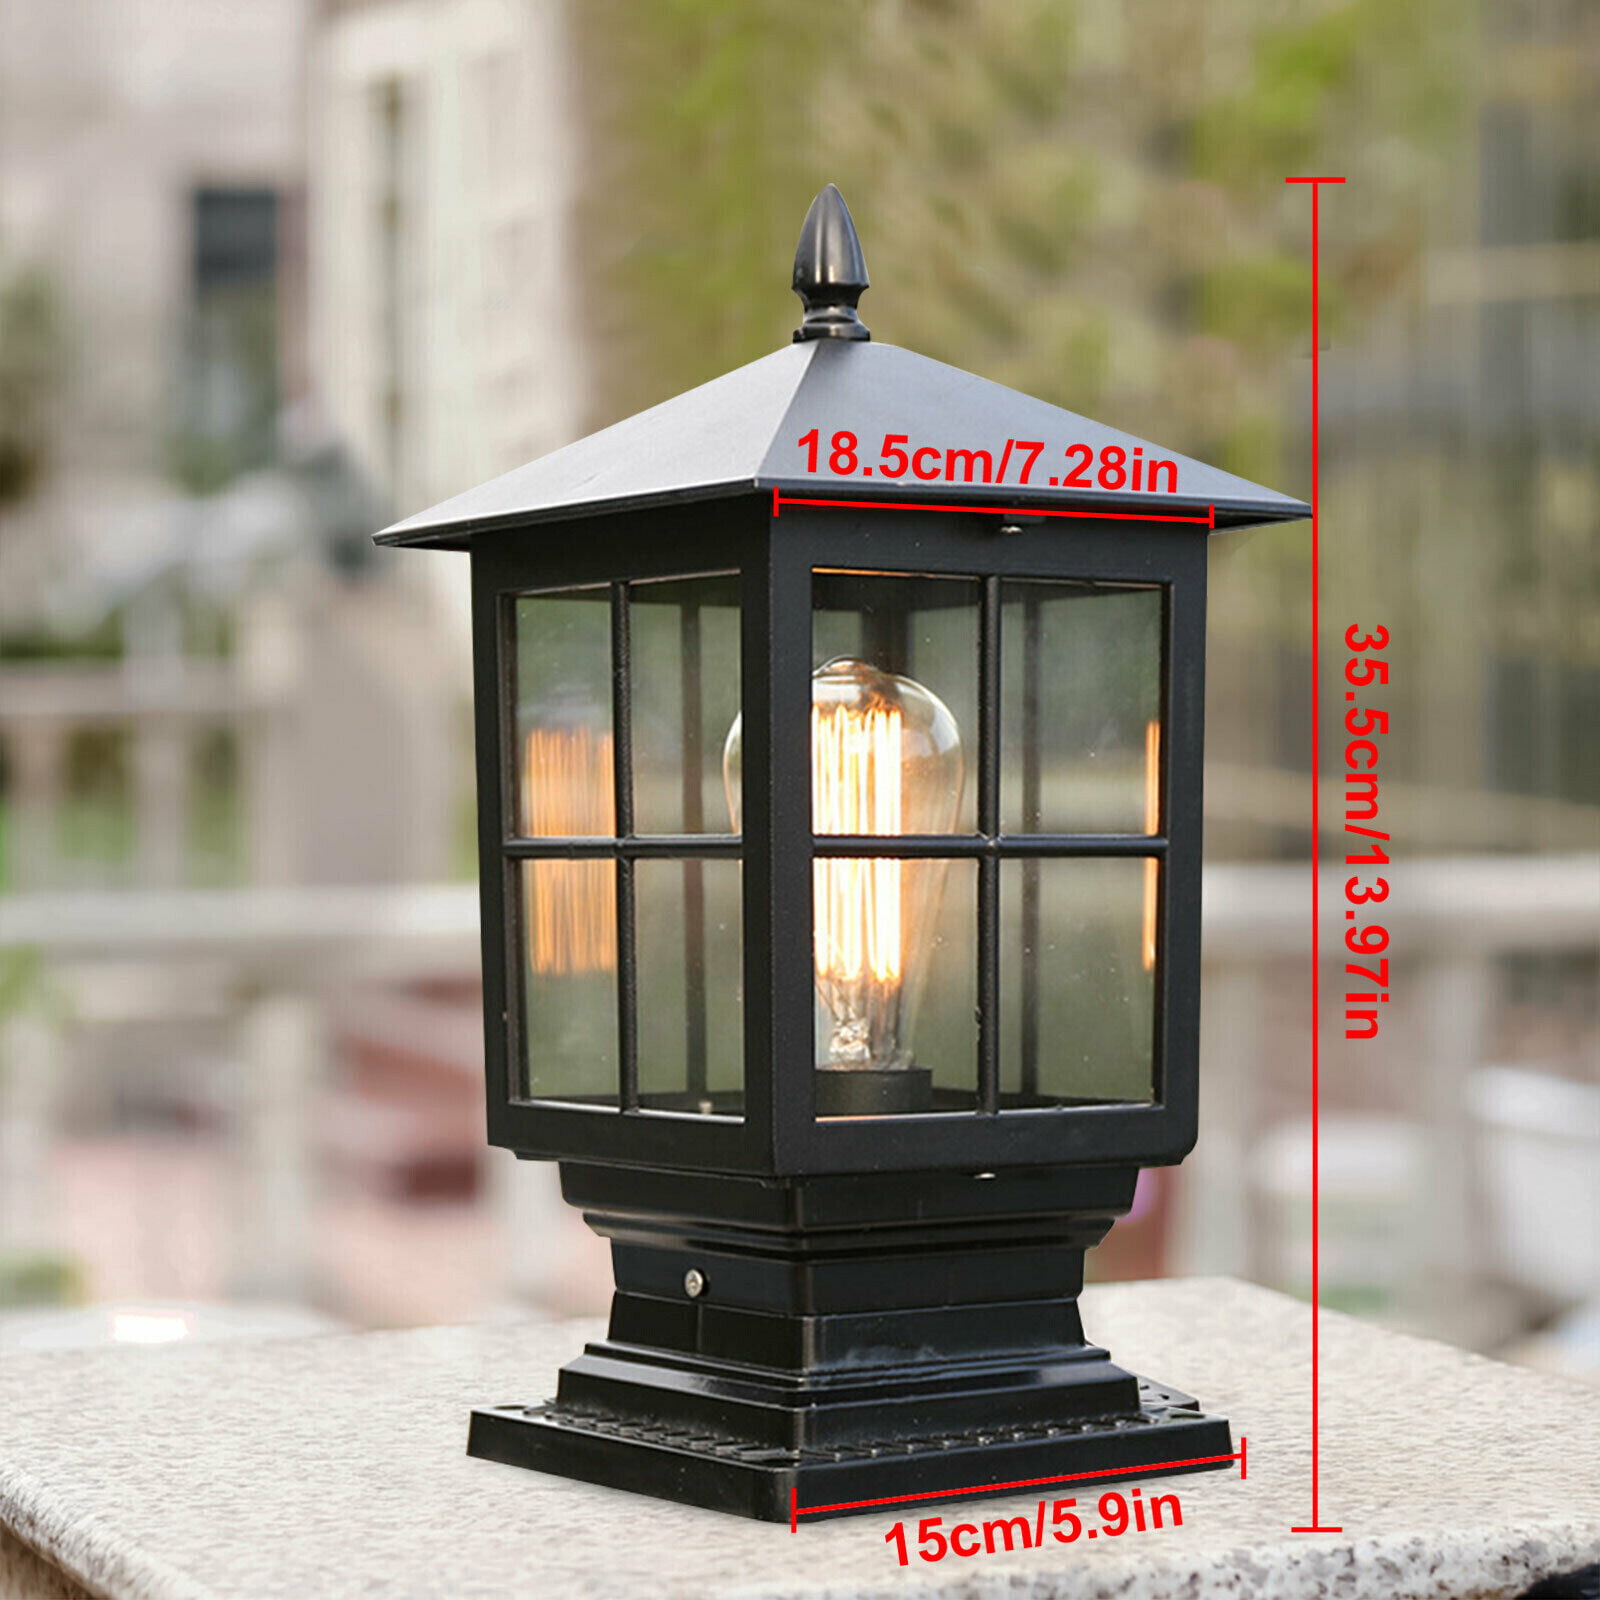 誠実 SDFDSSR Black Finish Globe Stigma Light Courtyard Pillar Outdoor  European Style Doorpost Waterproof Exterior Pole Lantern Patio Lamp Decor 